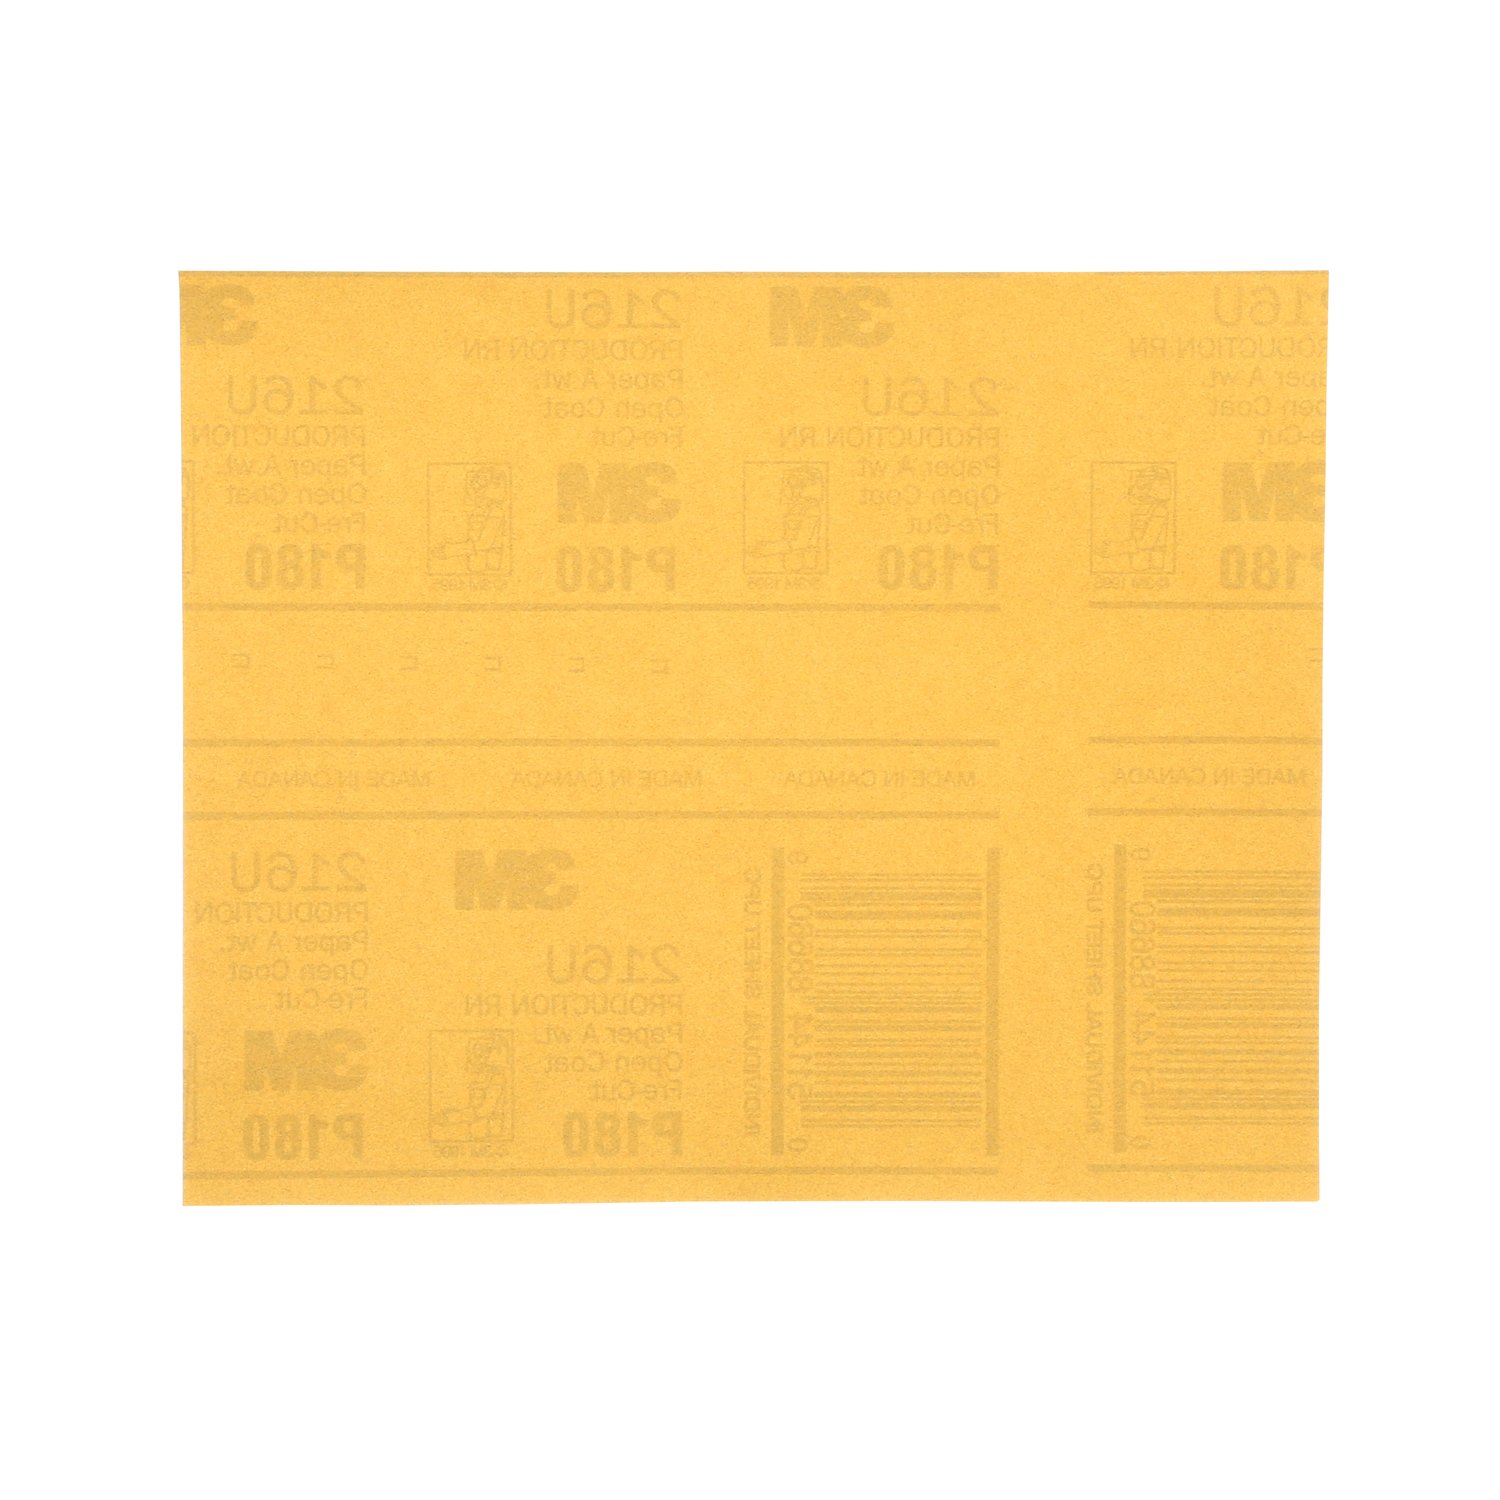 7000118284 - 3M Gold Abrasive Sheet, 02545, P180 grade, 9 in x 11 in, 50 sheets per
pack, 5 packs per case